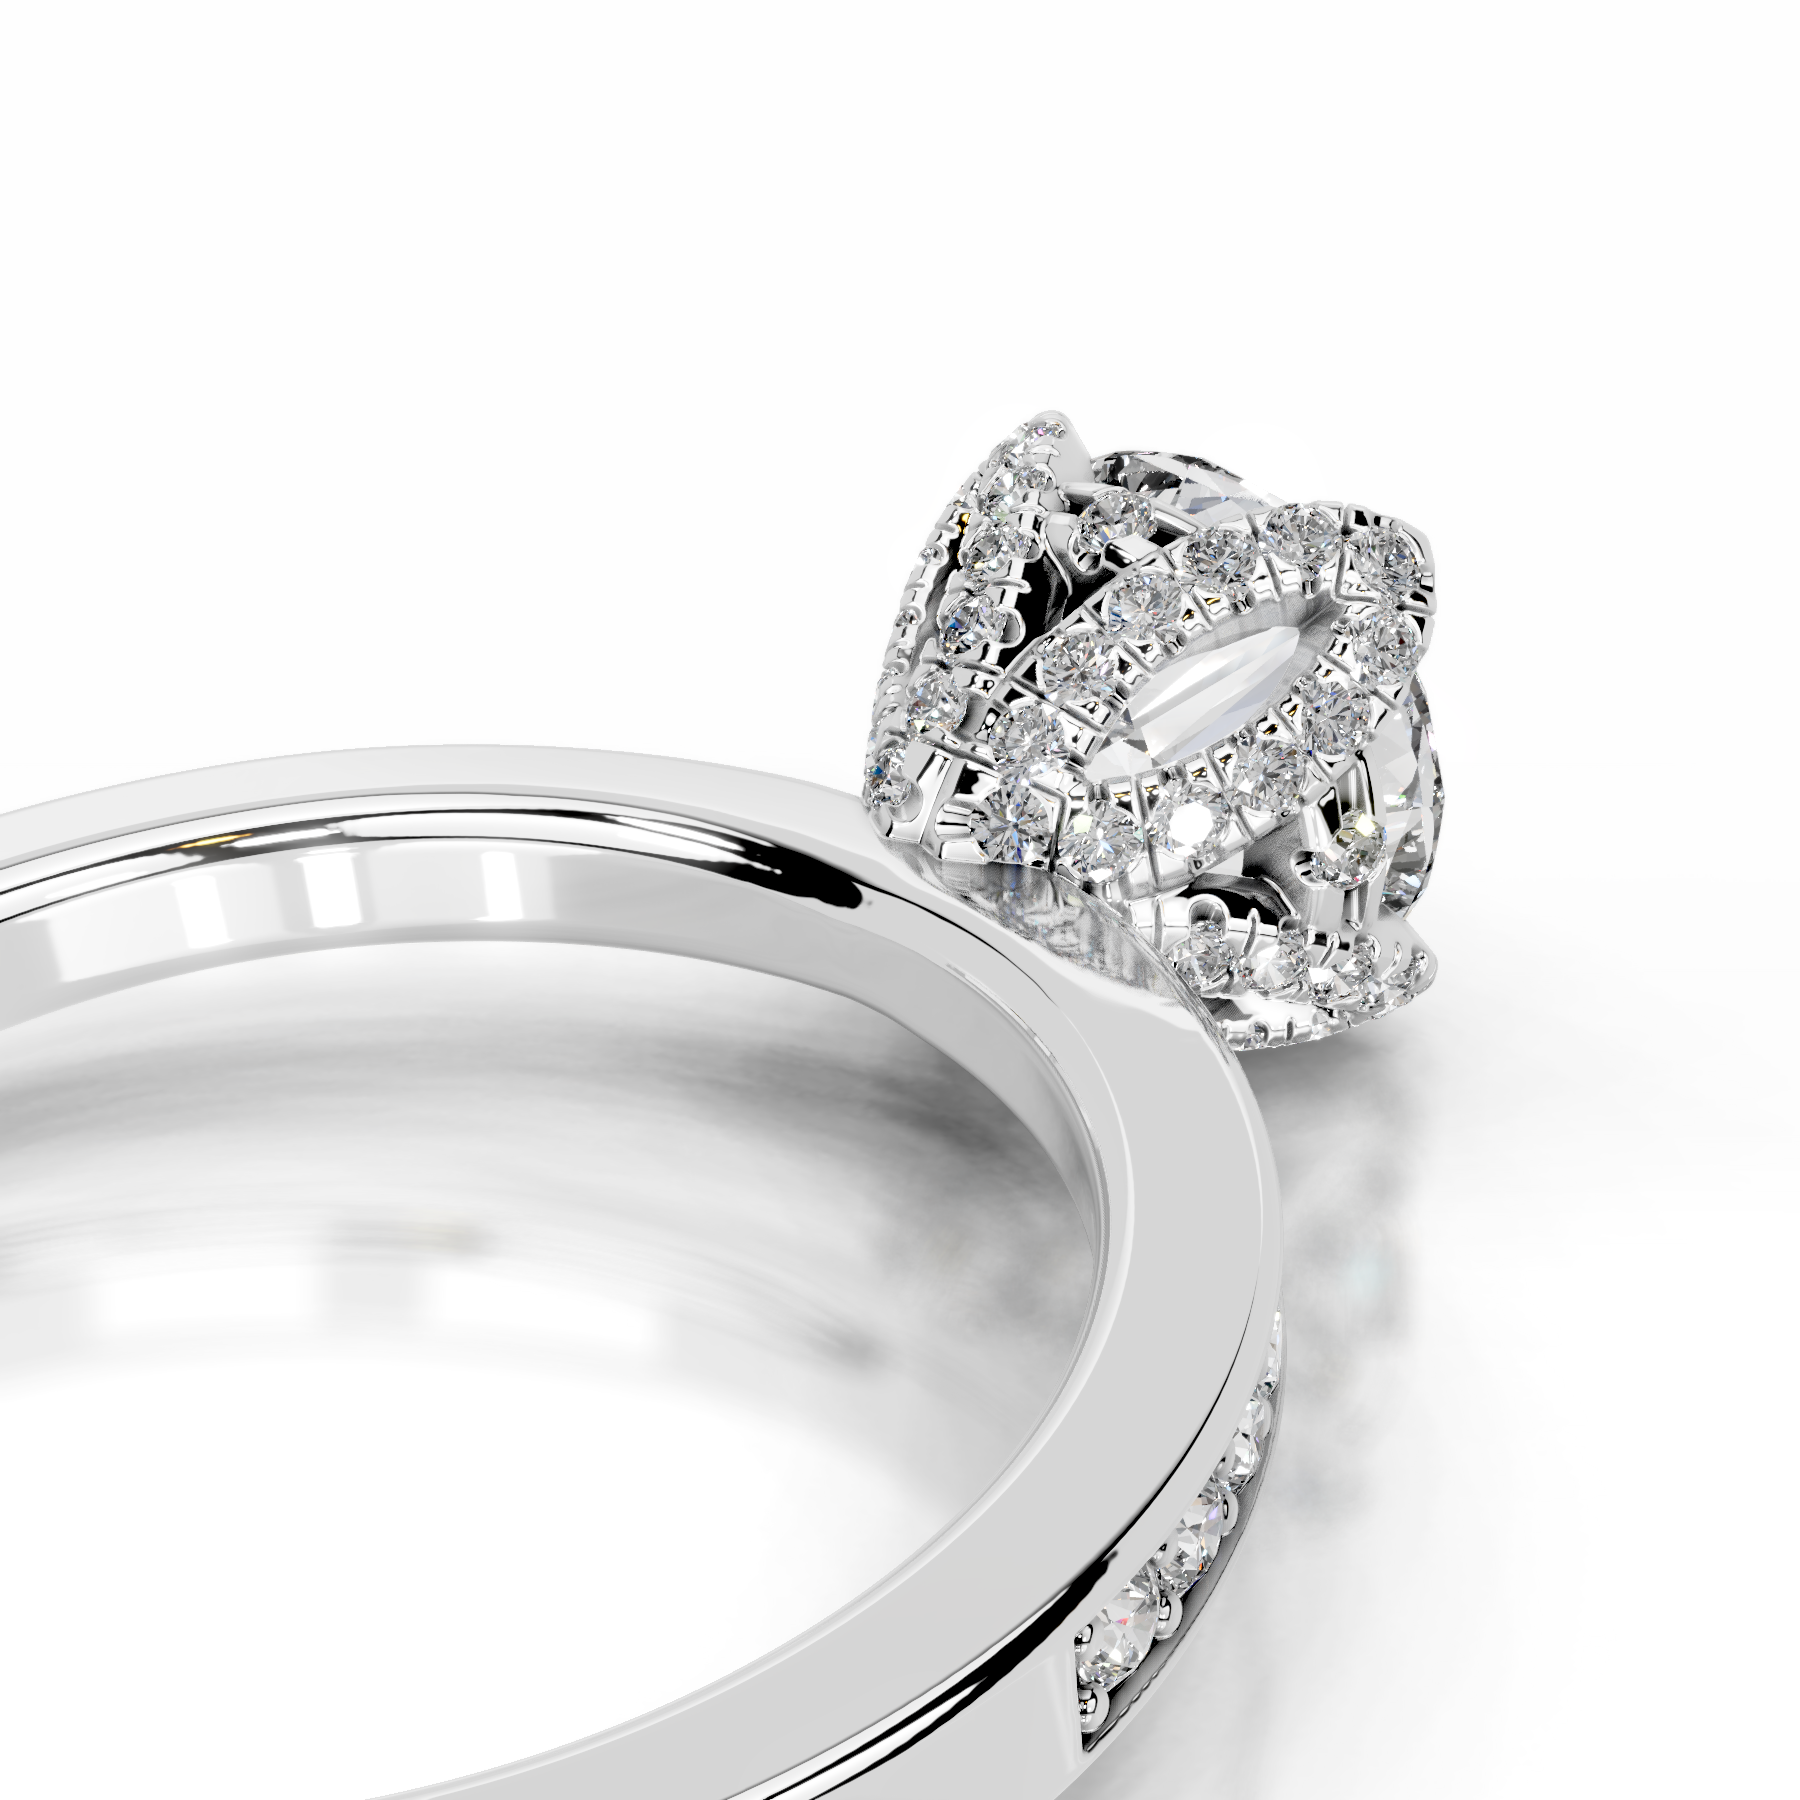 Daria Diamond Engagement Ring   (1.85 Carat) -18K White Gold